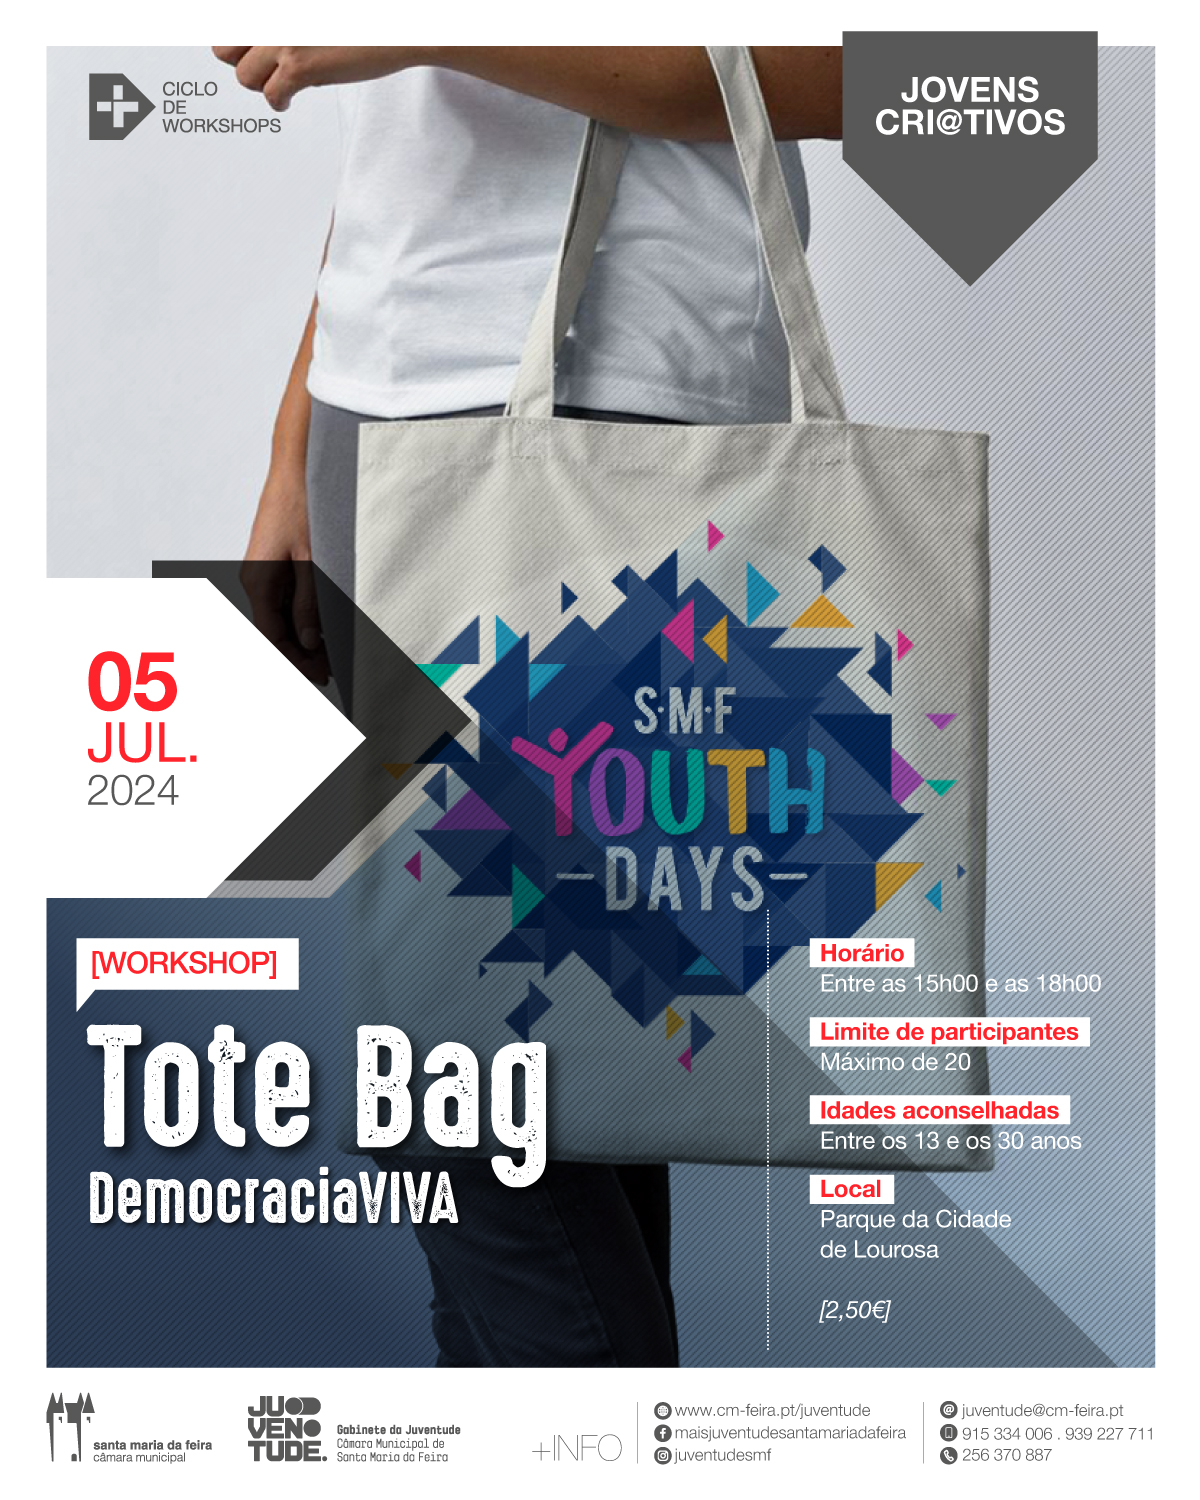 Capa Oficial do Evento Workshop ToteBag - Democracia Viva